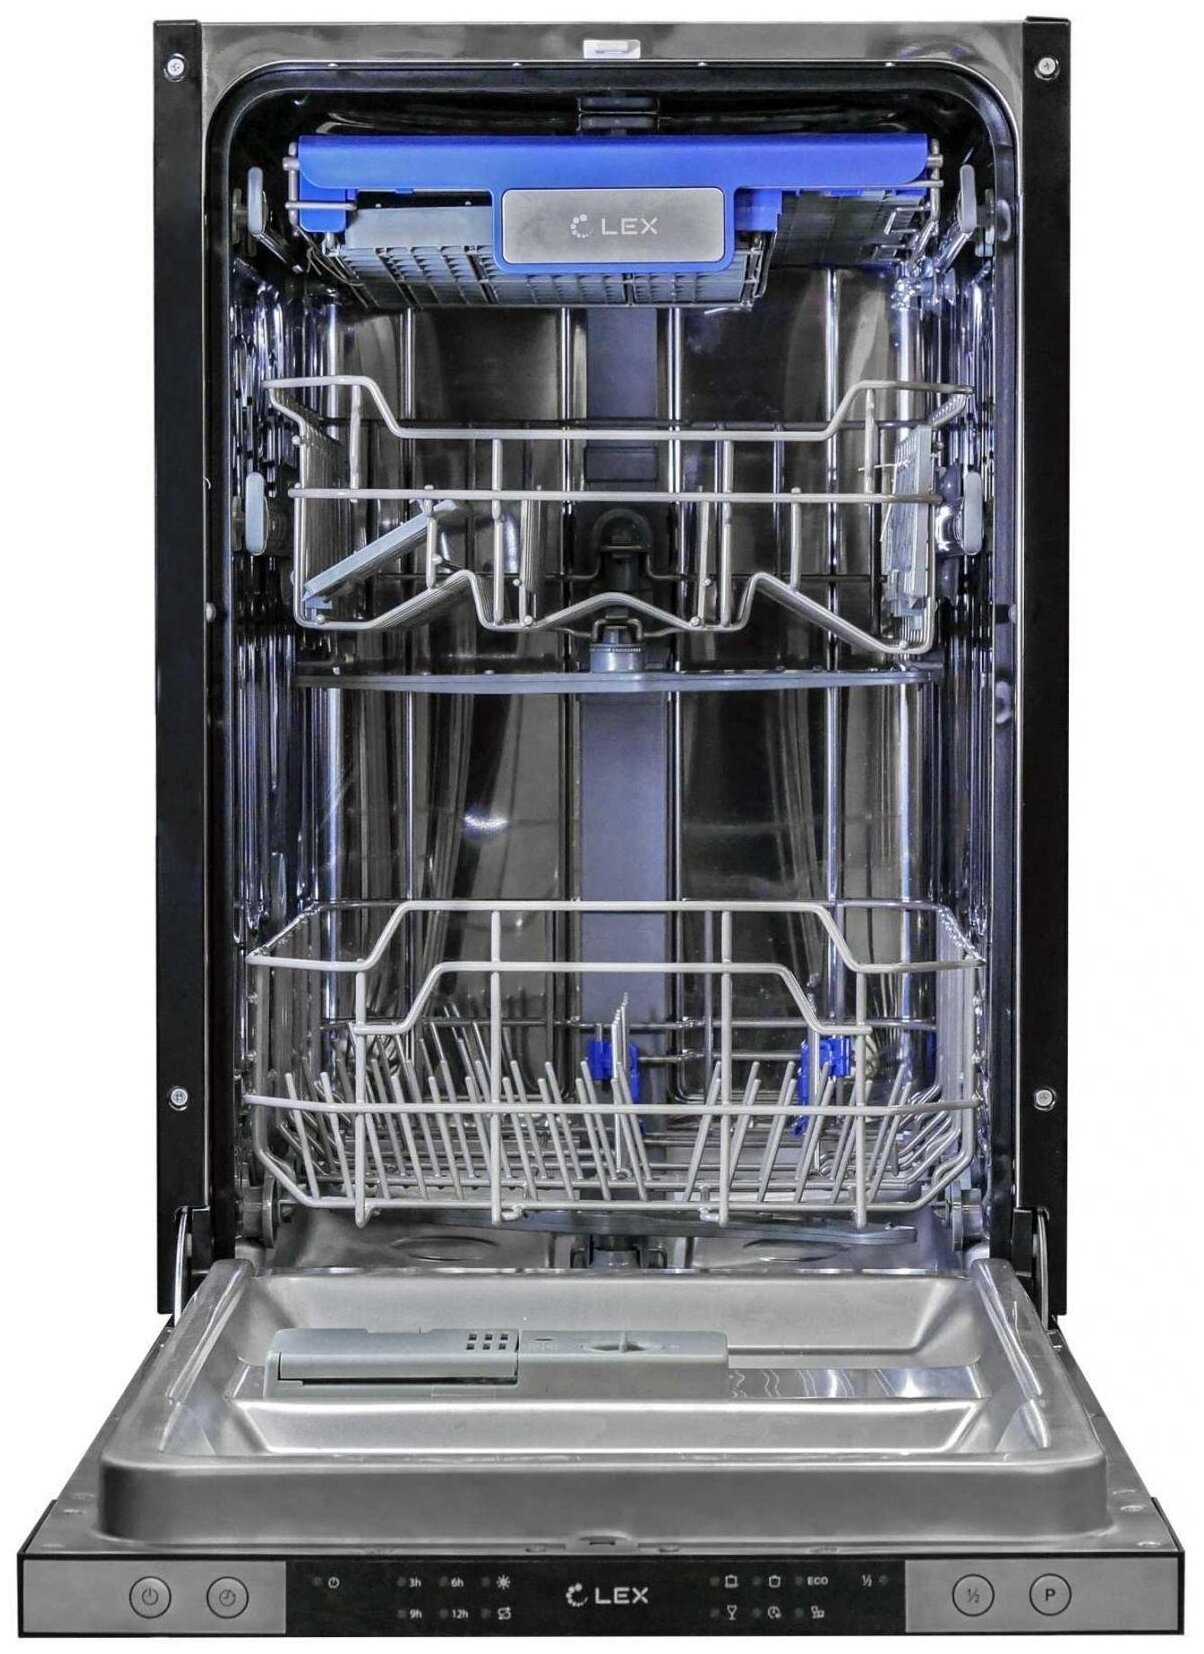 Посудомоечная машина 60 см купить в спб. Встраиваемая посудомоечная машина Lex PM 4563 B. Посудомоечная машина Lex PM 4563 A. Встраиваемая посудомоечная машина Ginzzu dc508. Посудомоечная машина Lex PM 4563 размер.